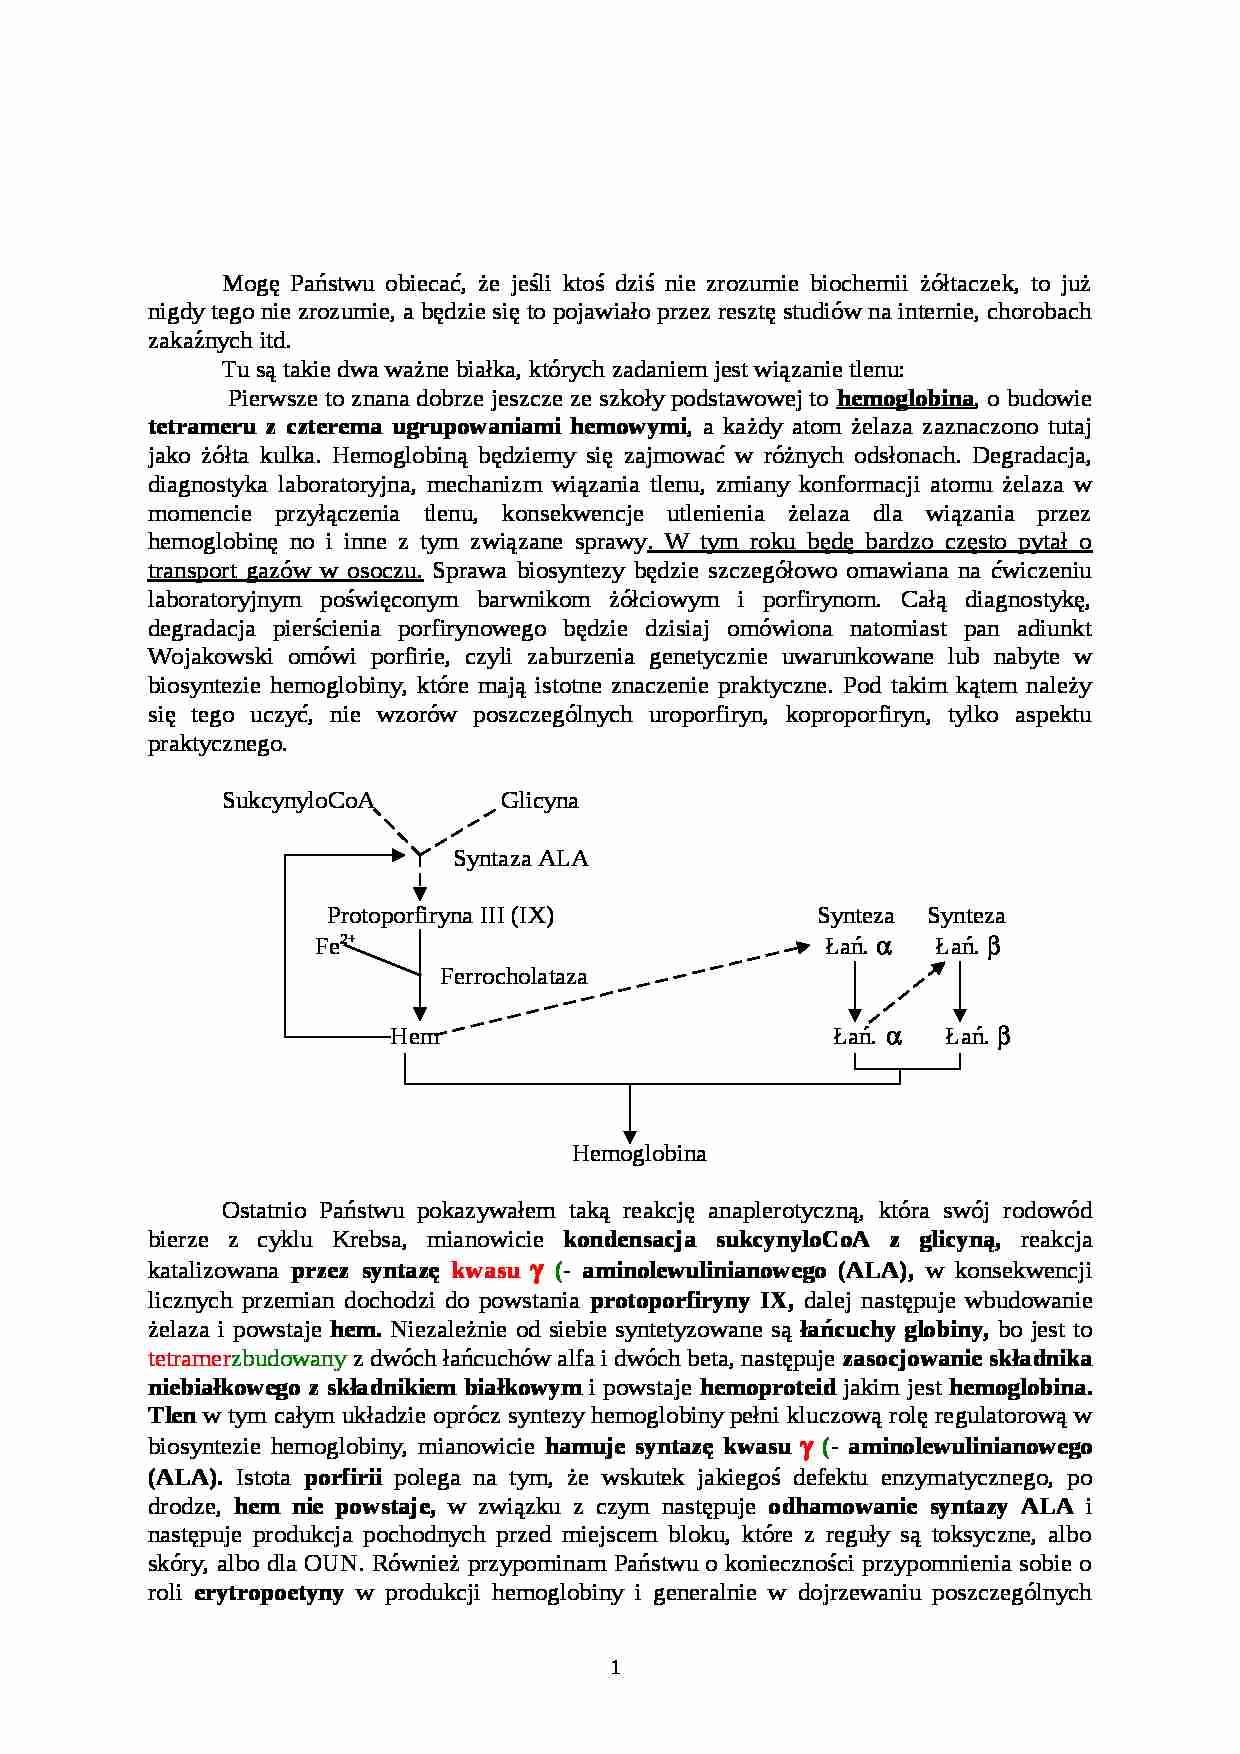 Biochemia żółtaczek - wykład - strona 1